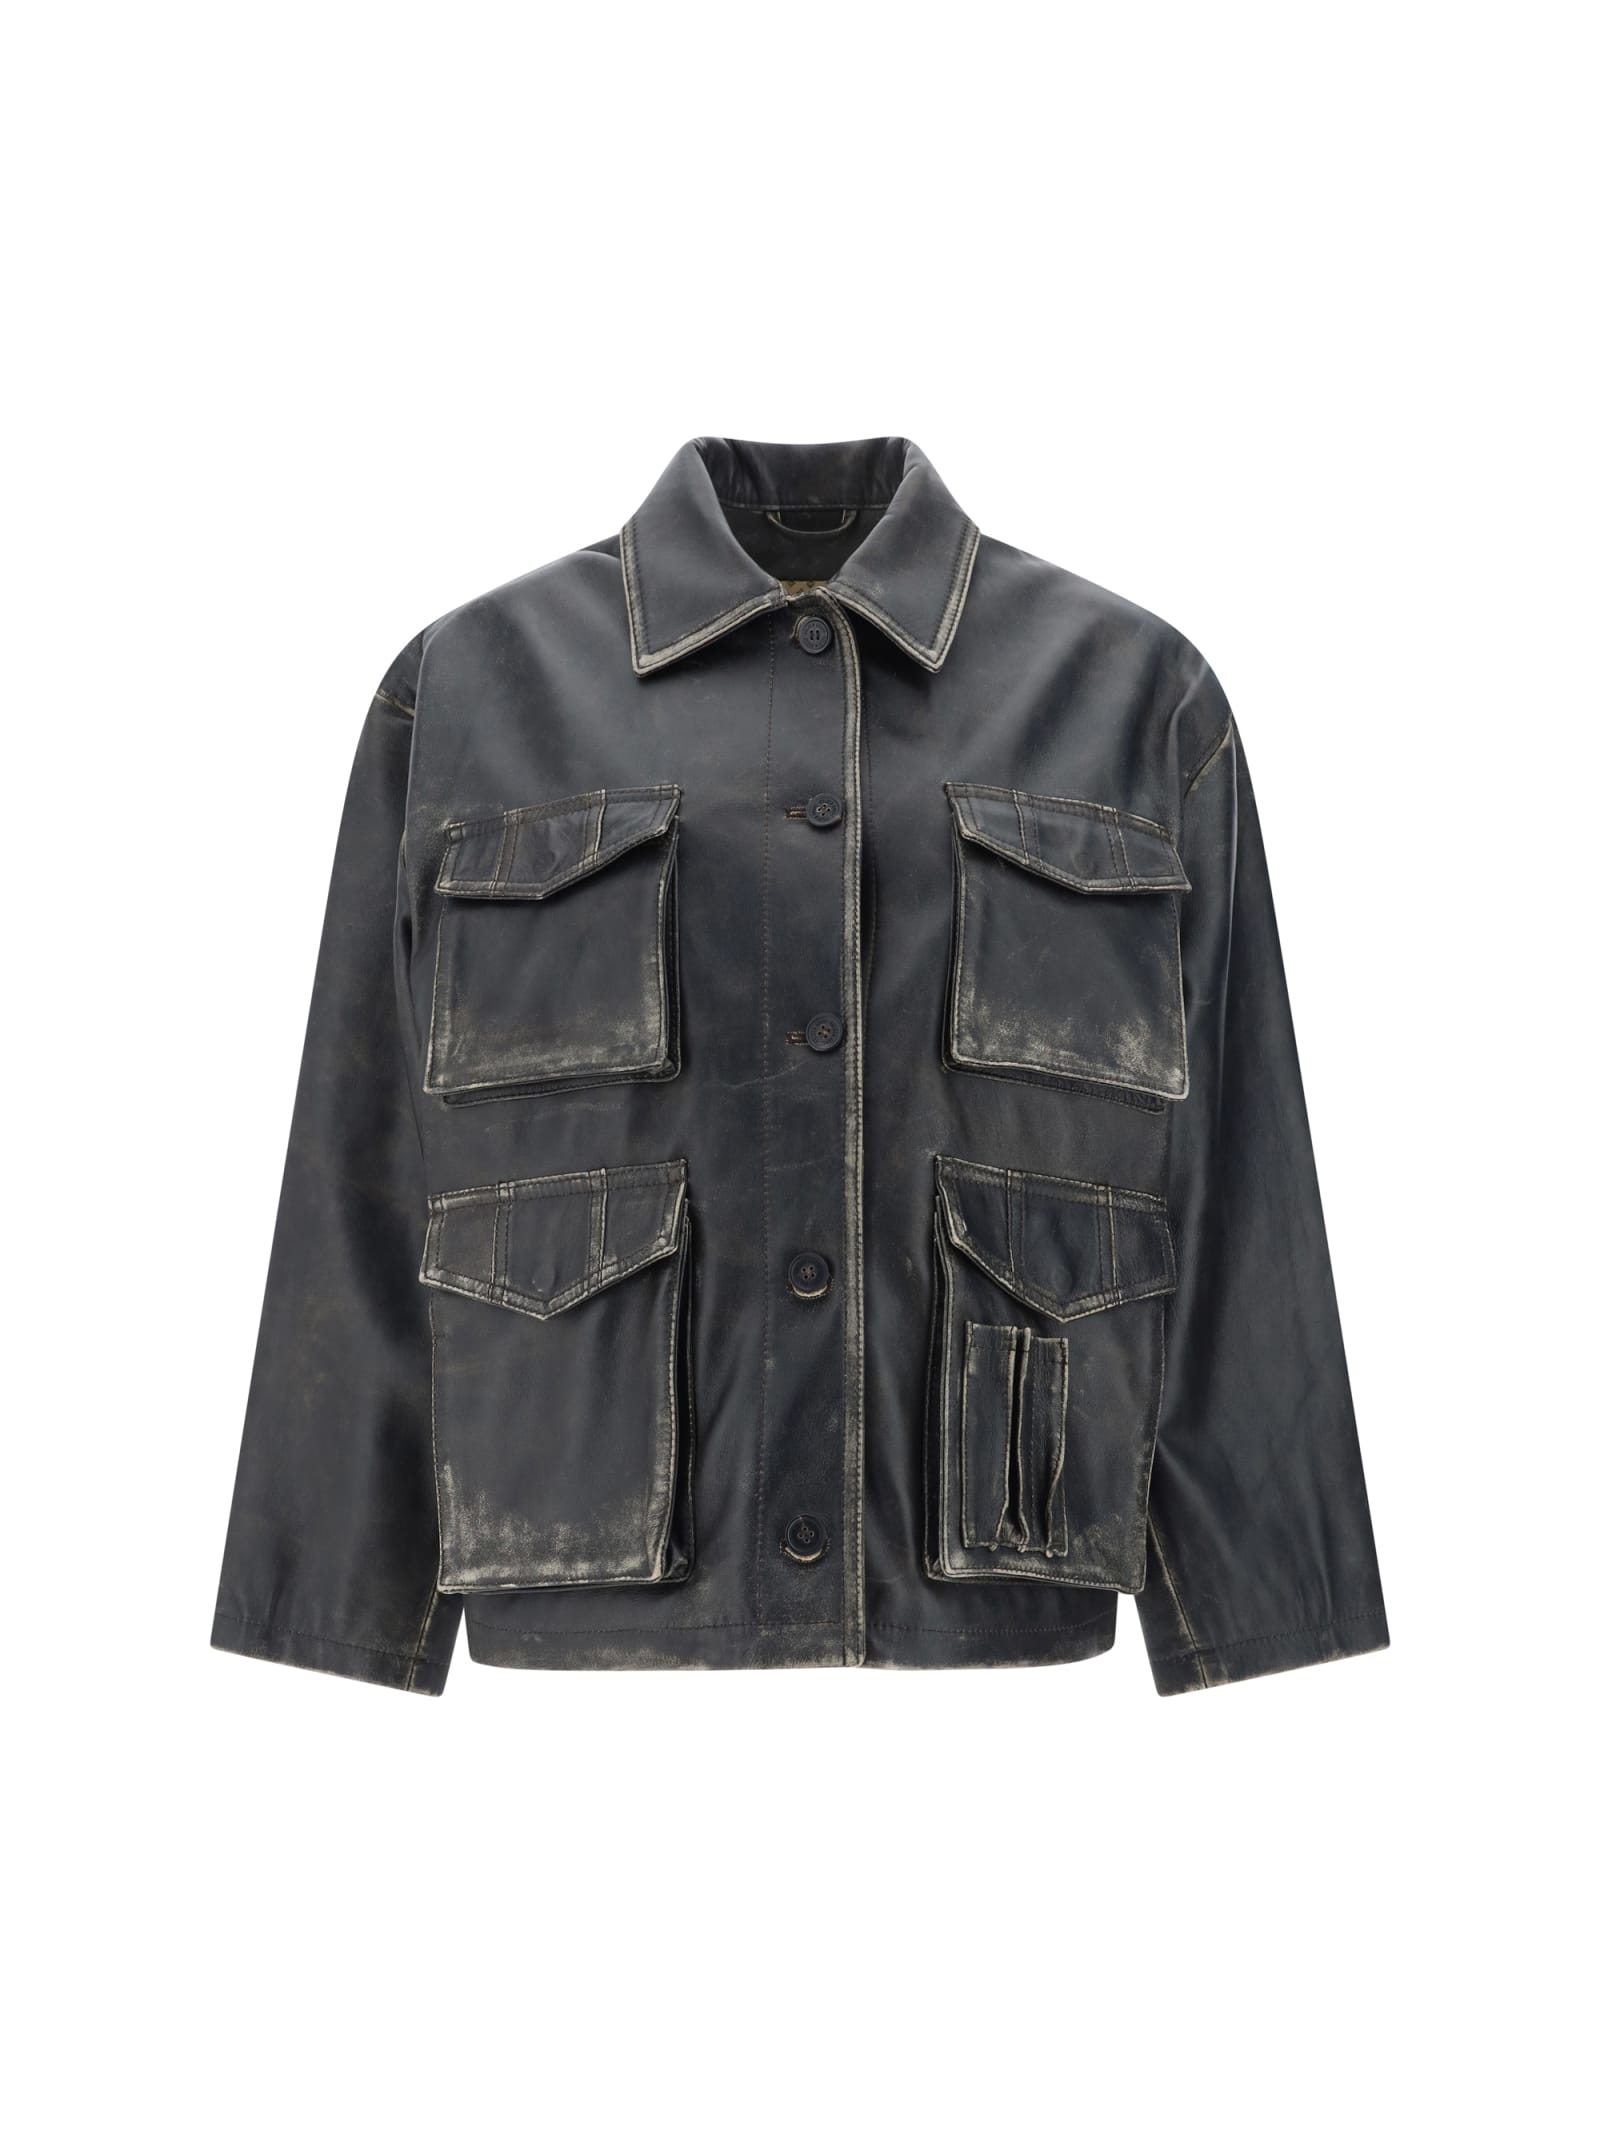 Leonor Pocket Leather Jacket